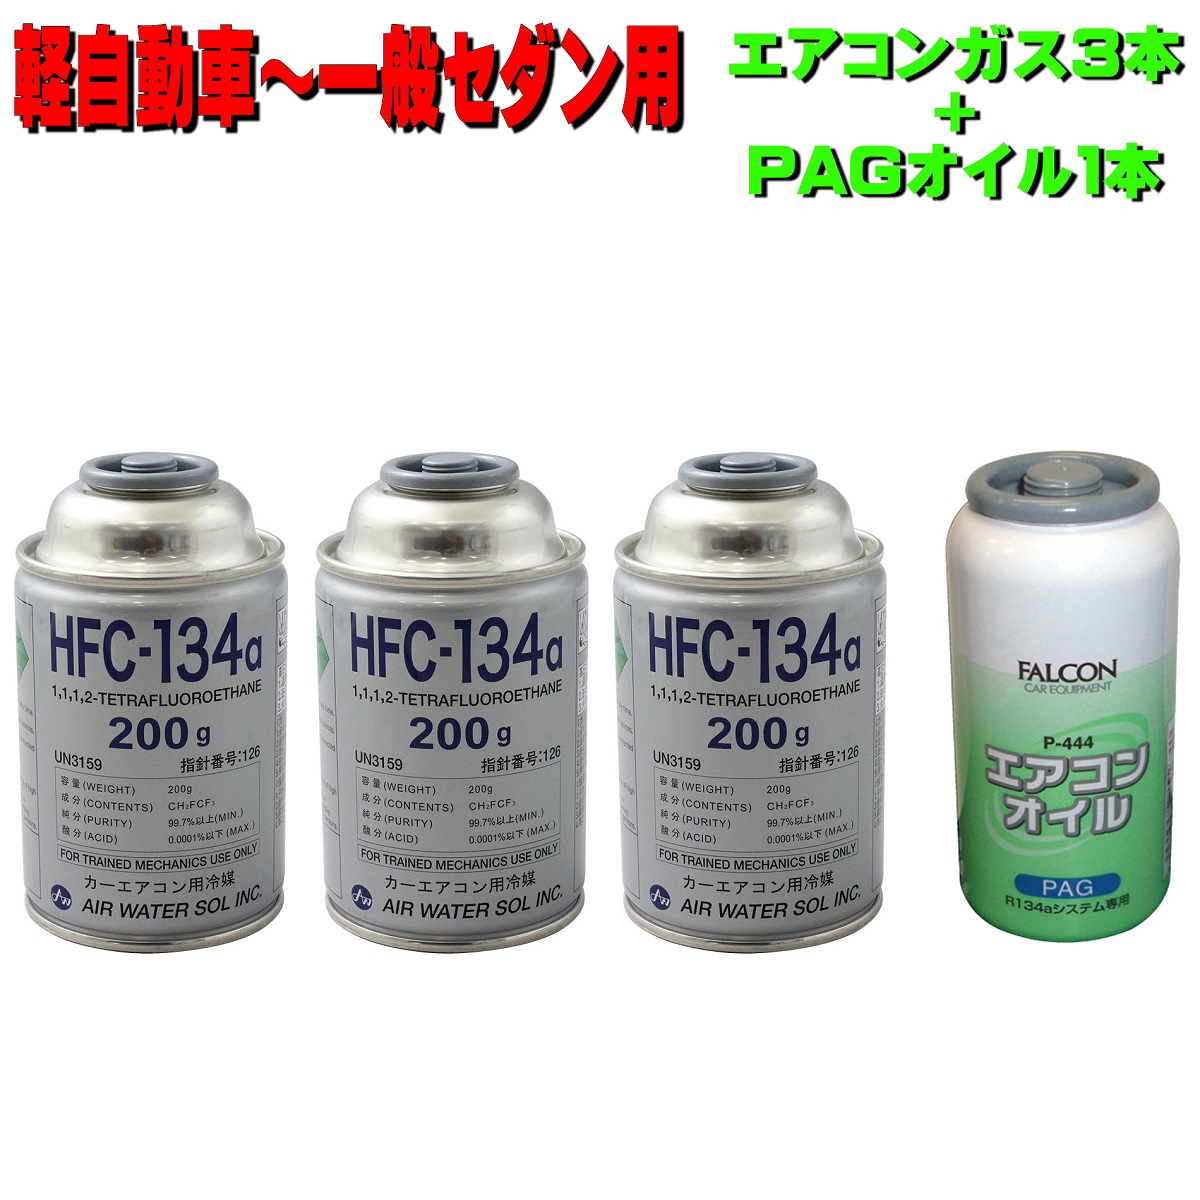 蛍光剤入りエアコンオイル　P-441、P444 PAG各1本とガスセット（管1）